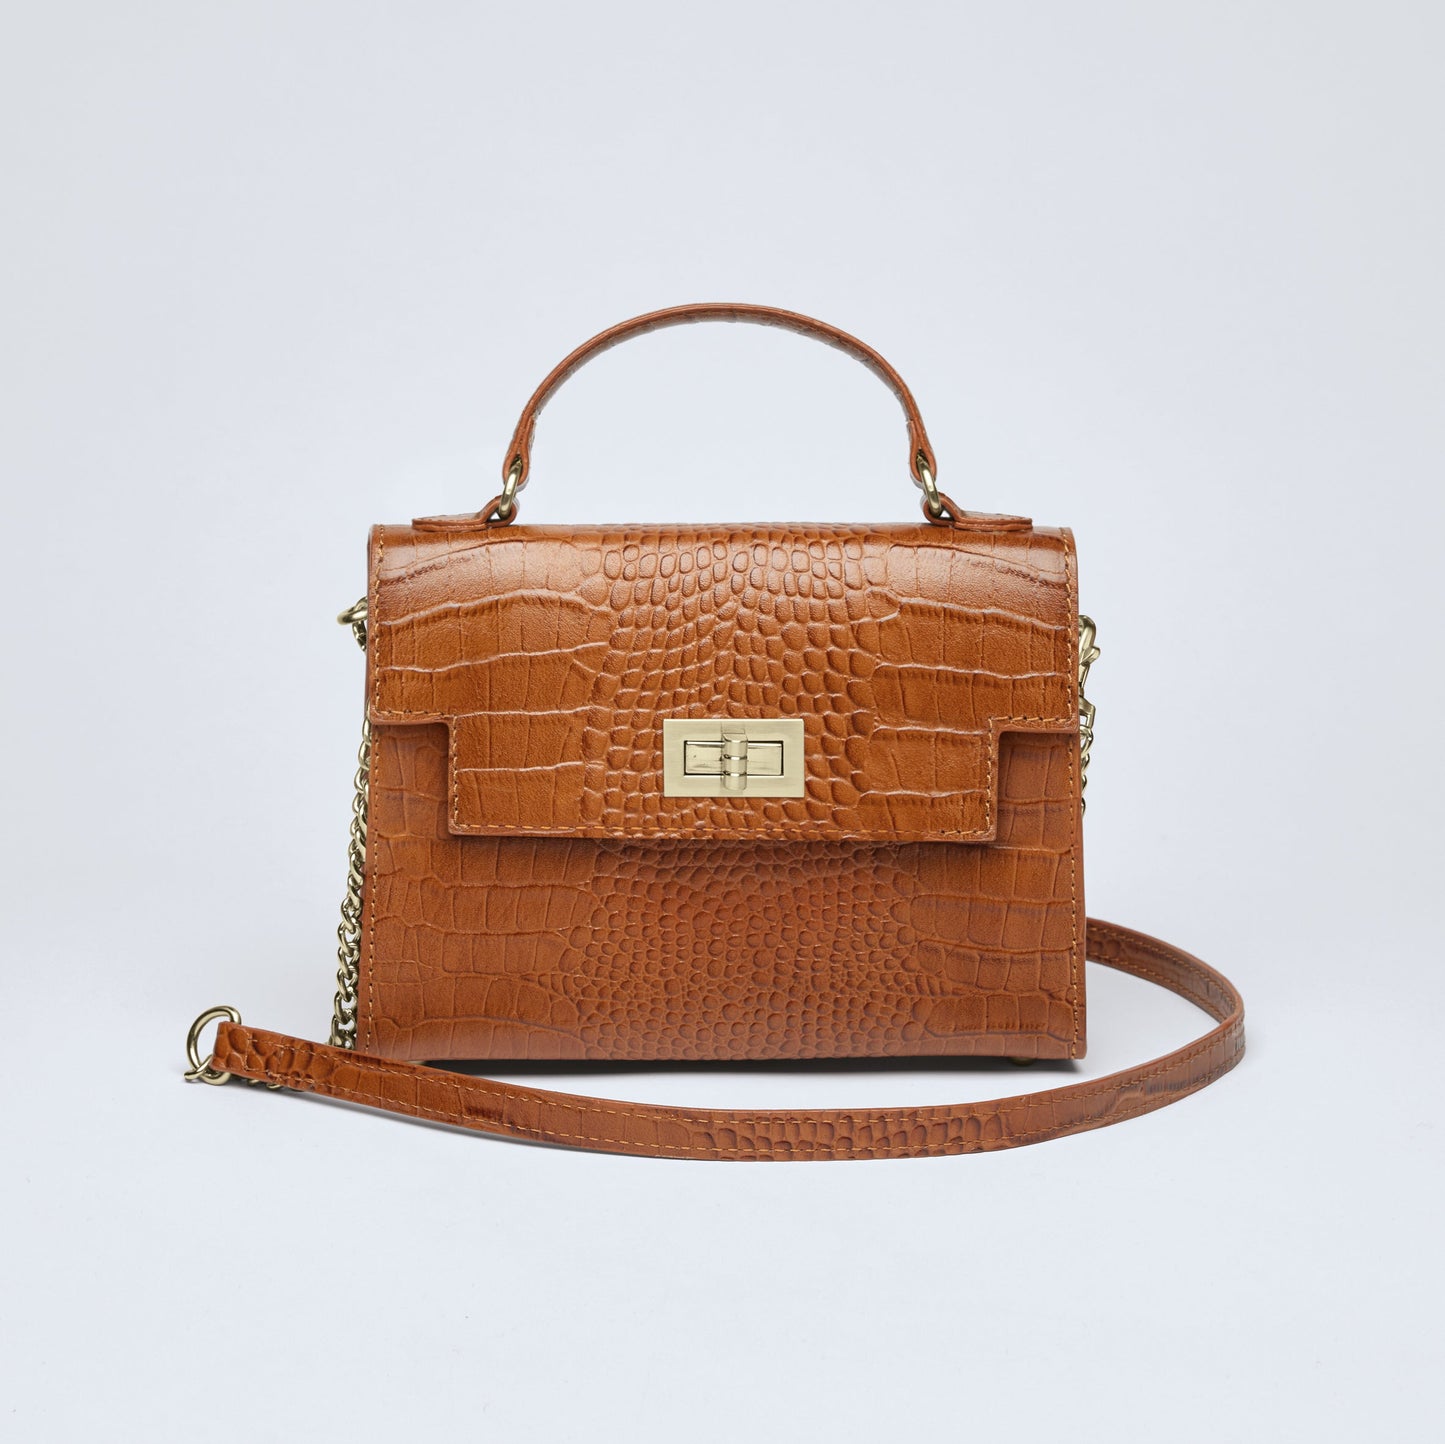 Croco leather handbag Monceau Cognac